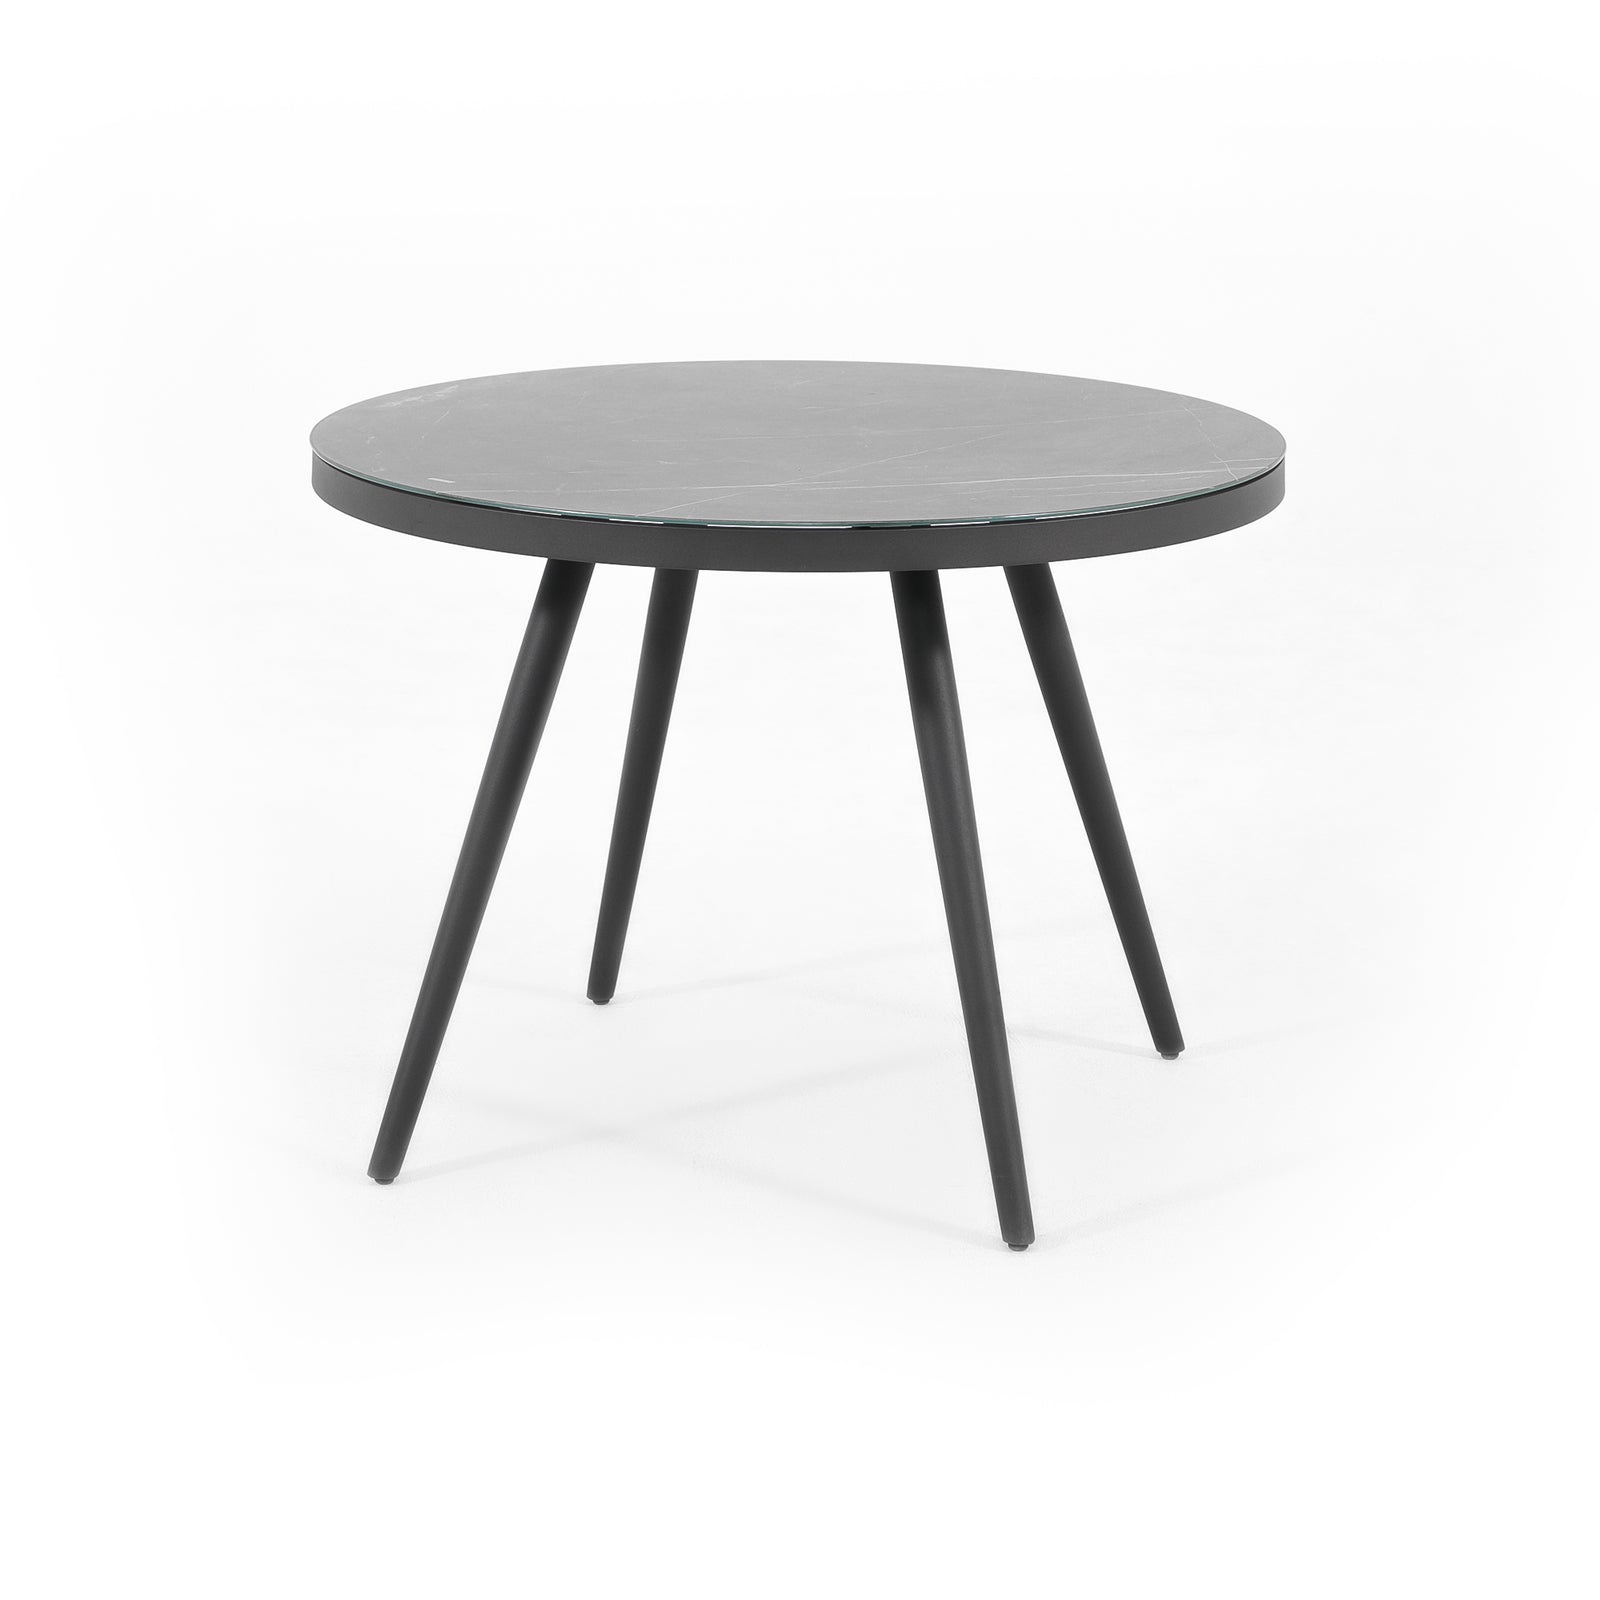 Comino Modern aluminum outdoor Dining Table, grey Round, glass top - Jardina furniture